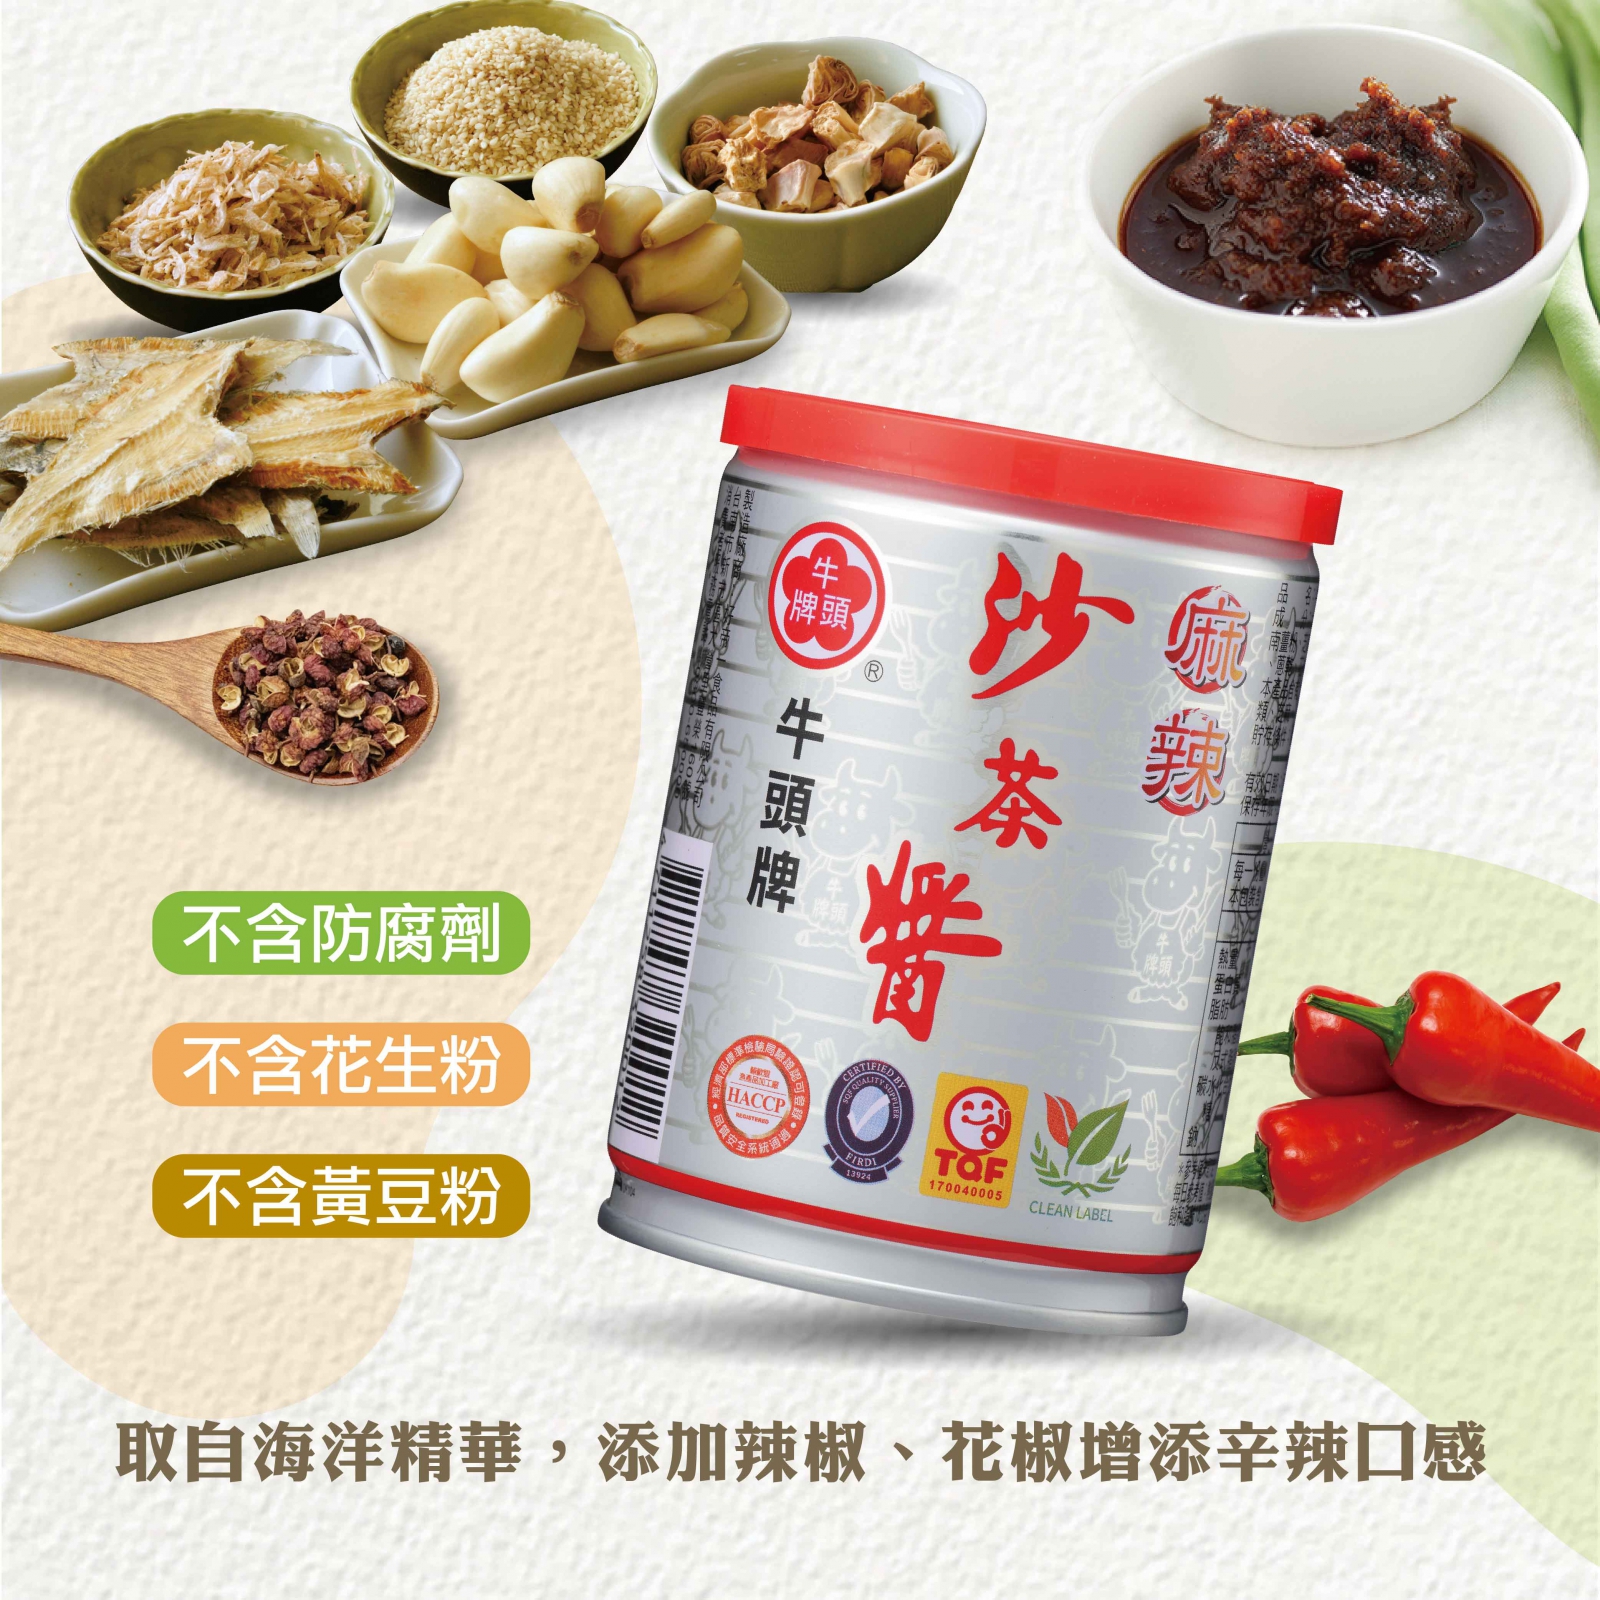 沙茶醬(麻辣)250g使用魚乾及赤尾青入料，口感上是有顆粒狀，添加辣椒與花椒帶出辛辣香氣。